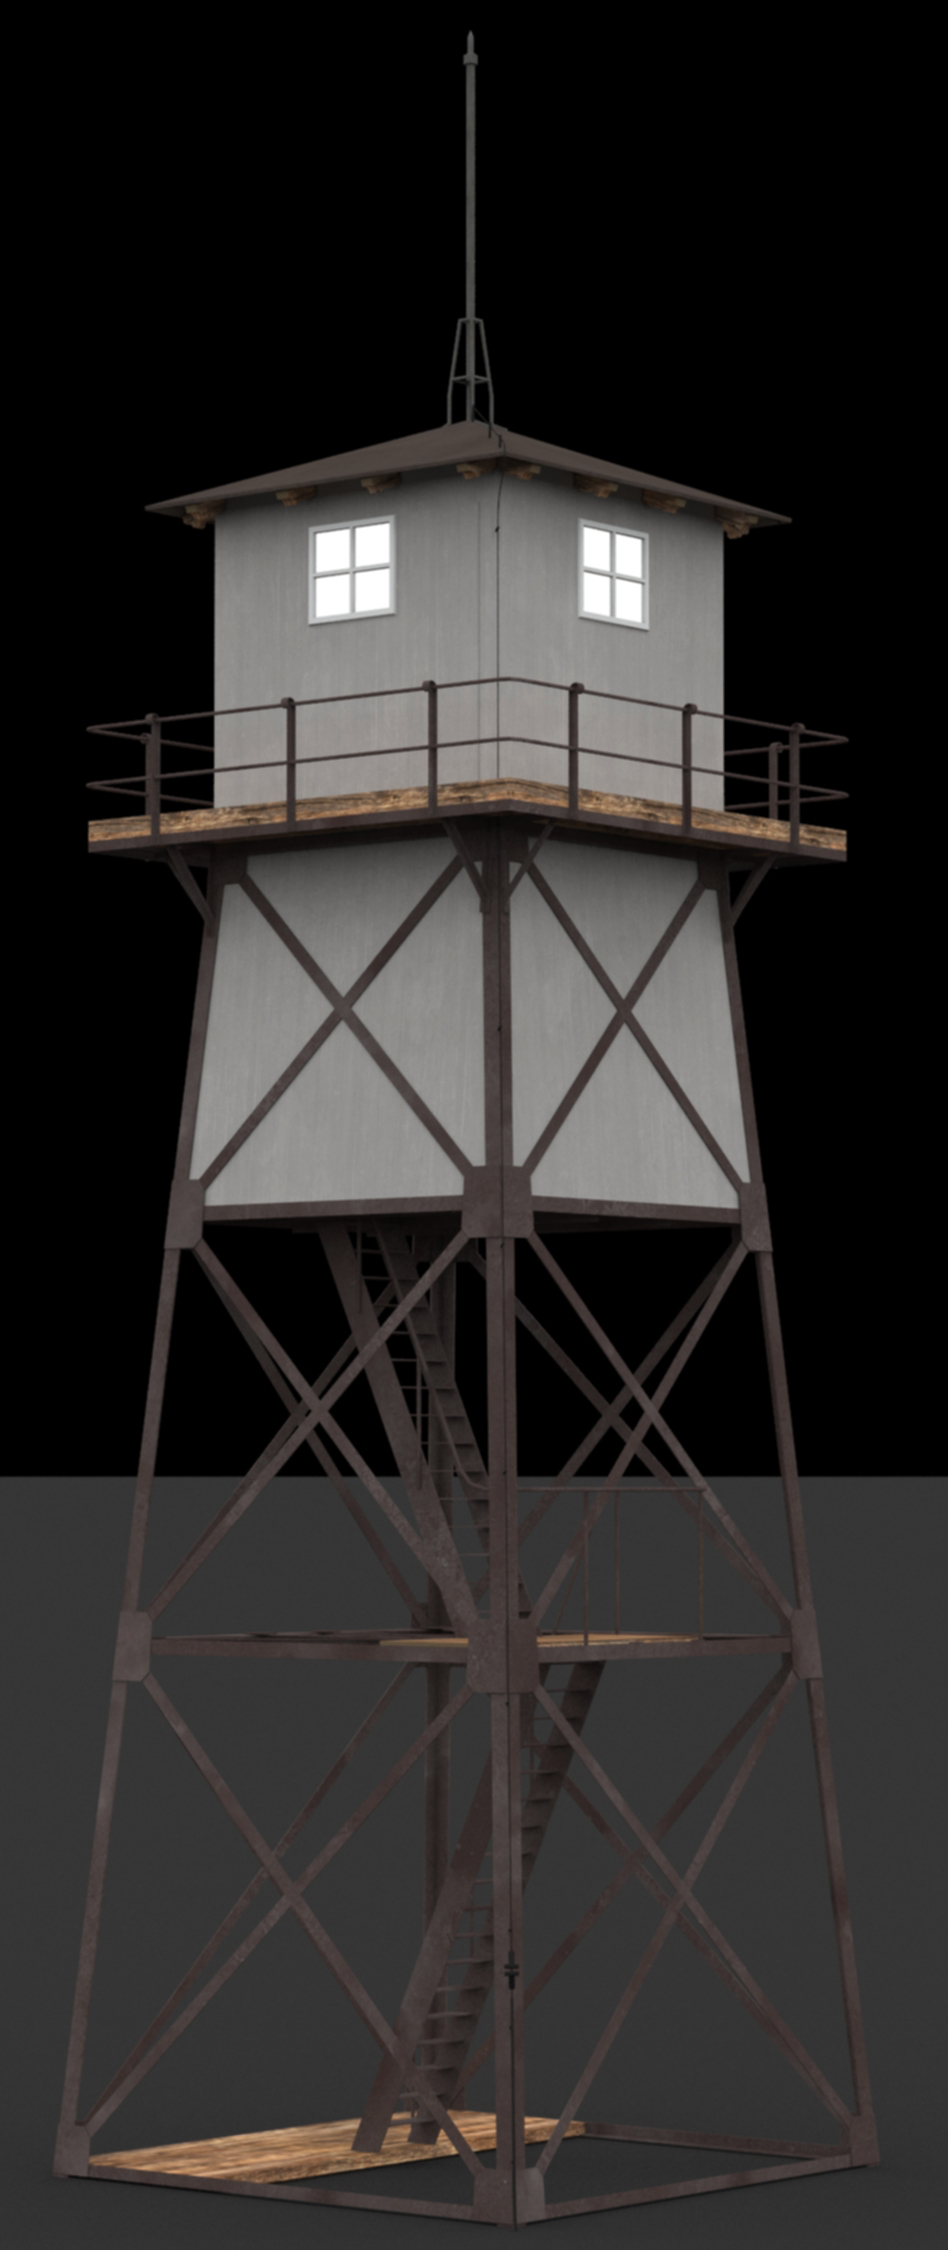 Lotsenwachtturm, Insel Ruden, 1905